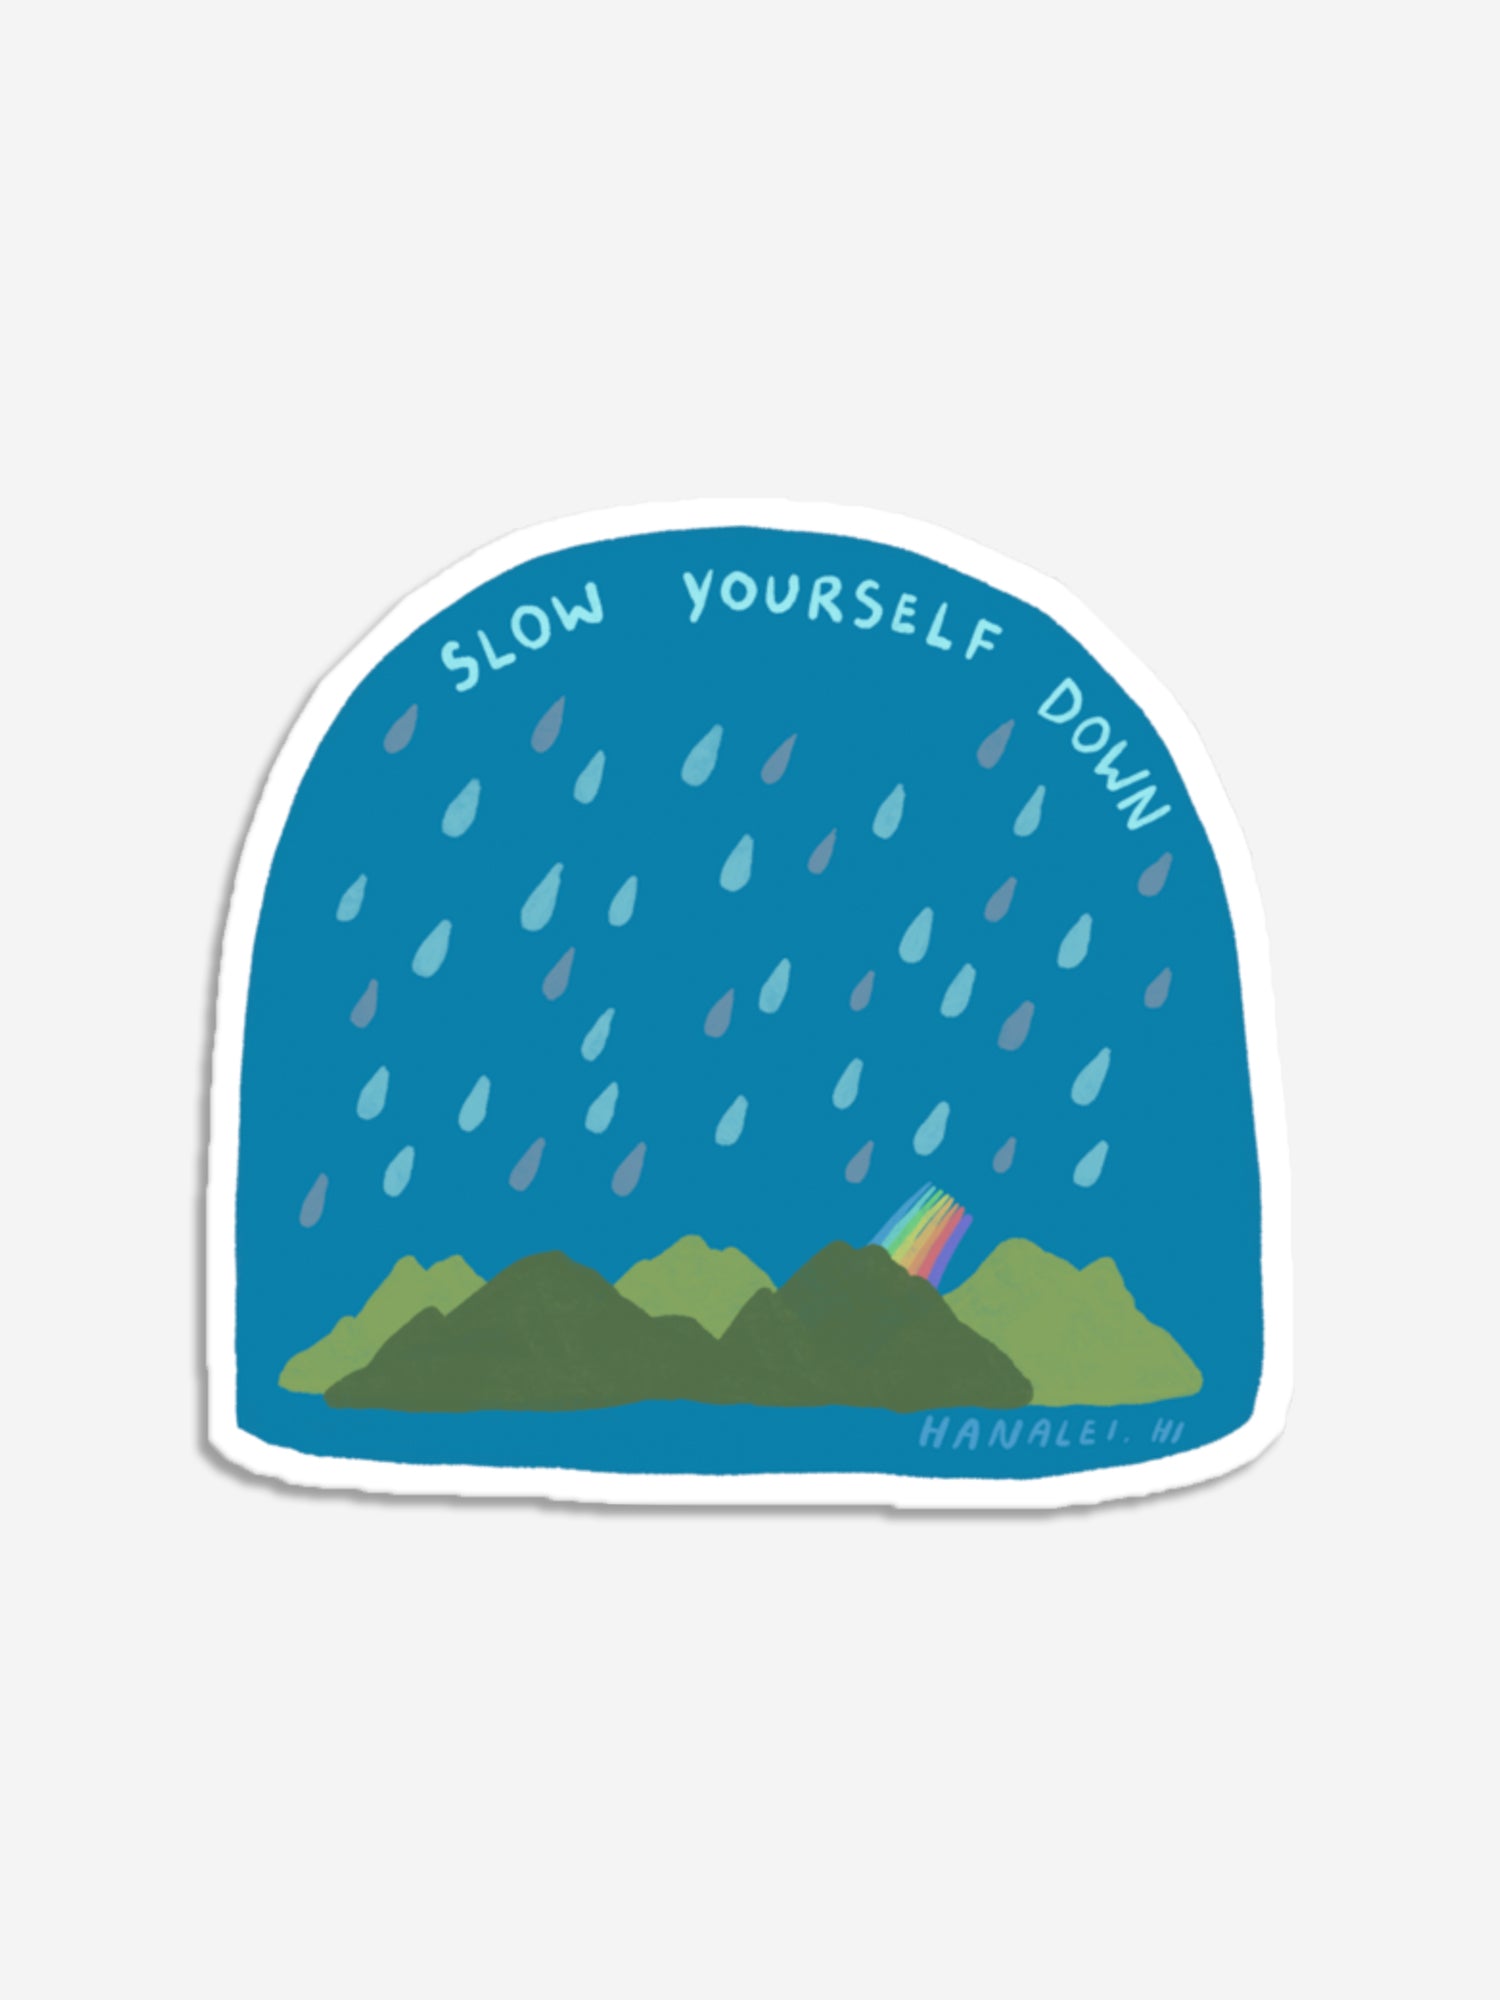 Raindrops Sticker